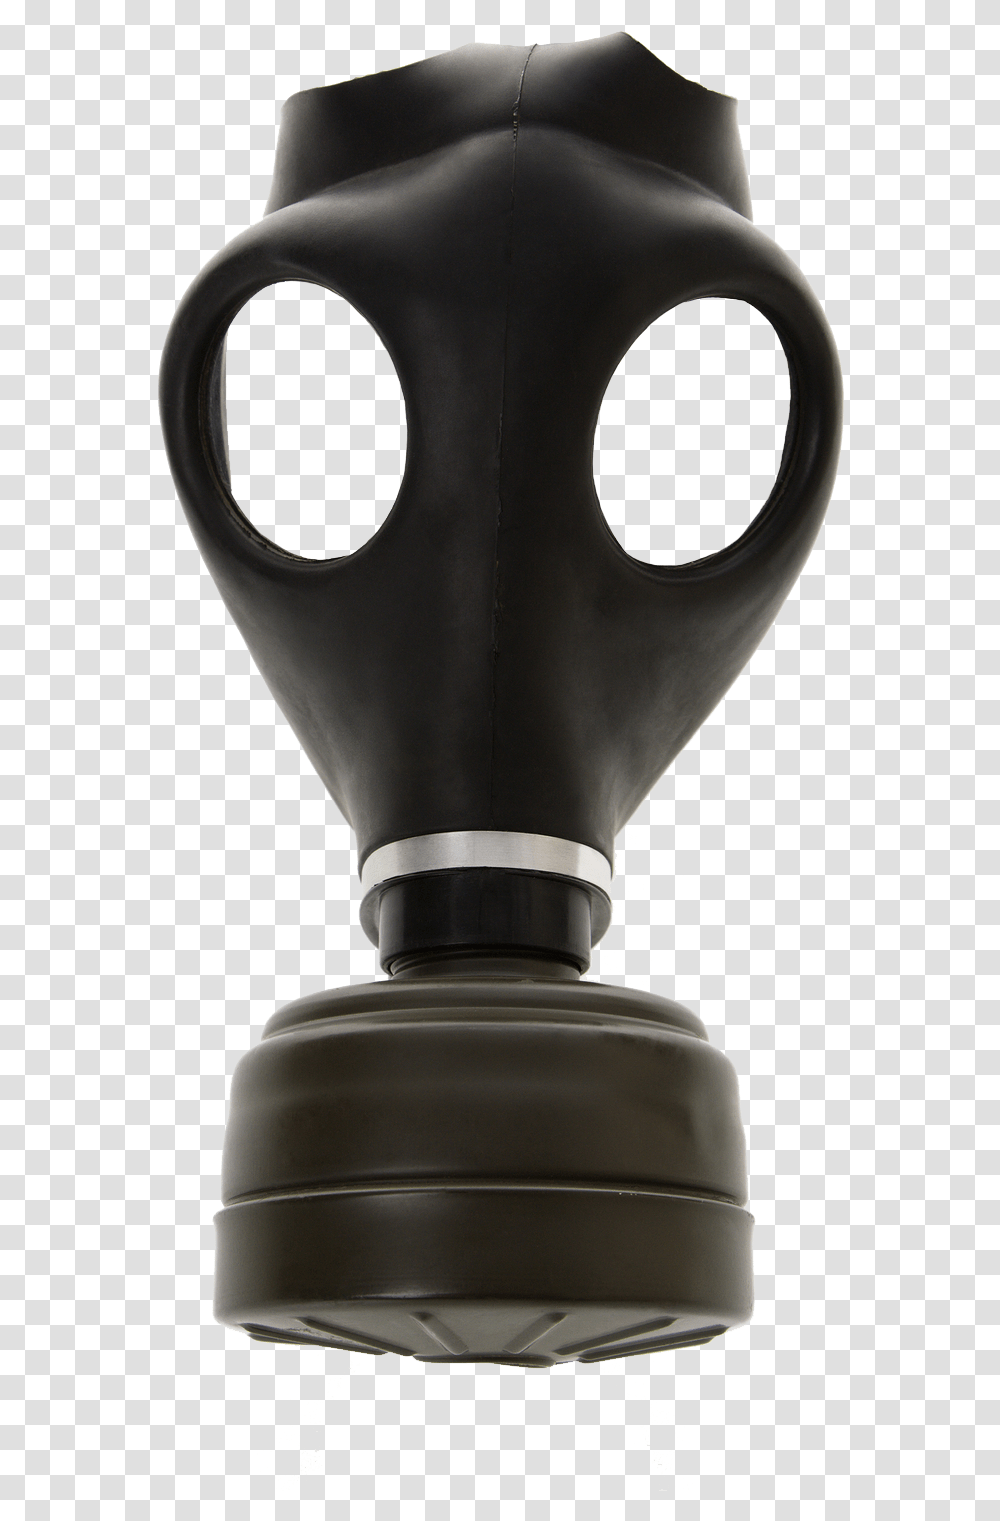 Gas Mask, Lamp, Bottle, Trophy Transparent Png